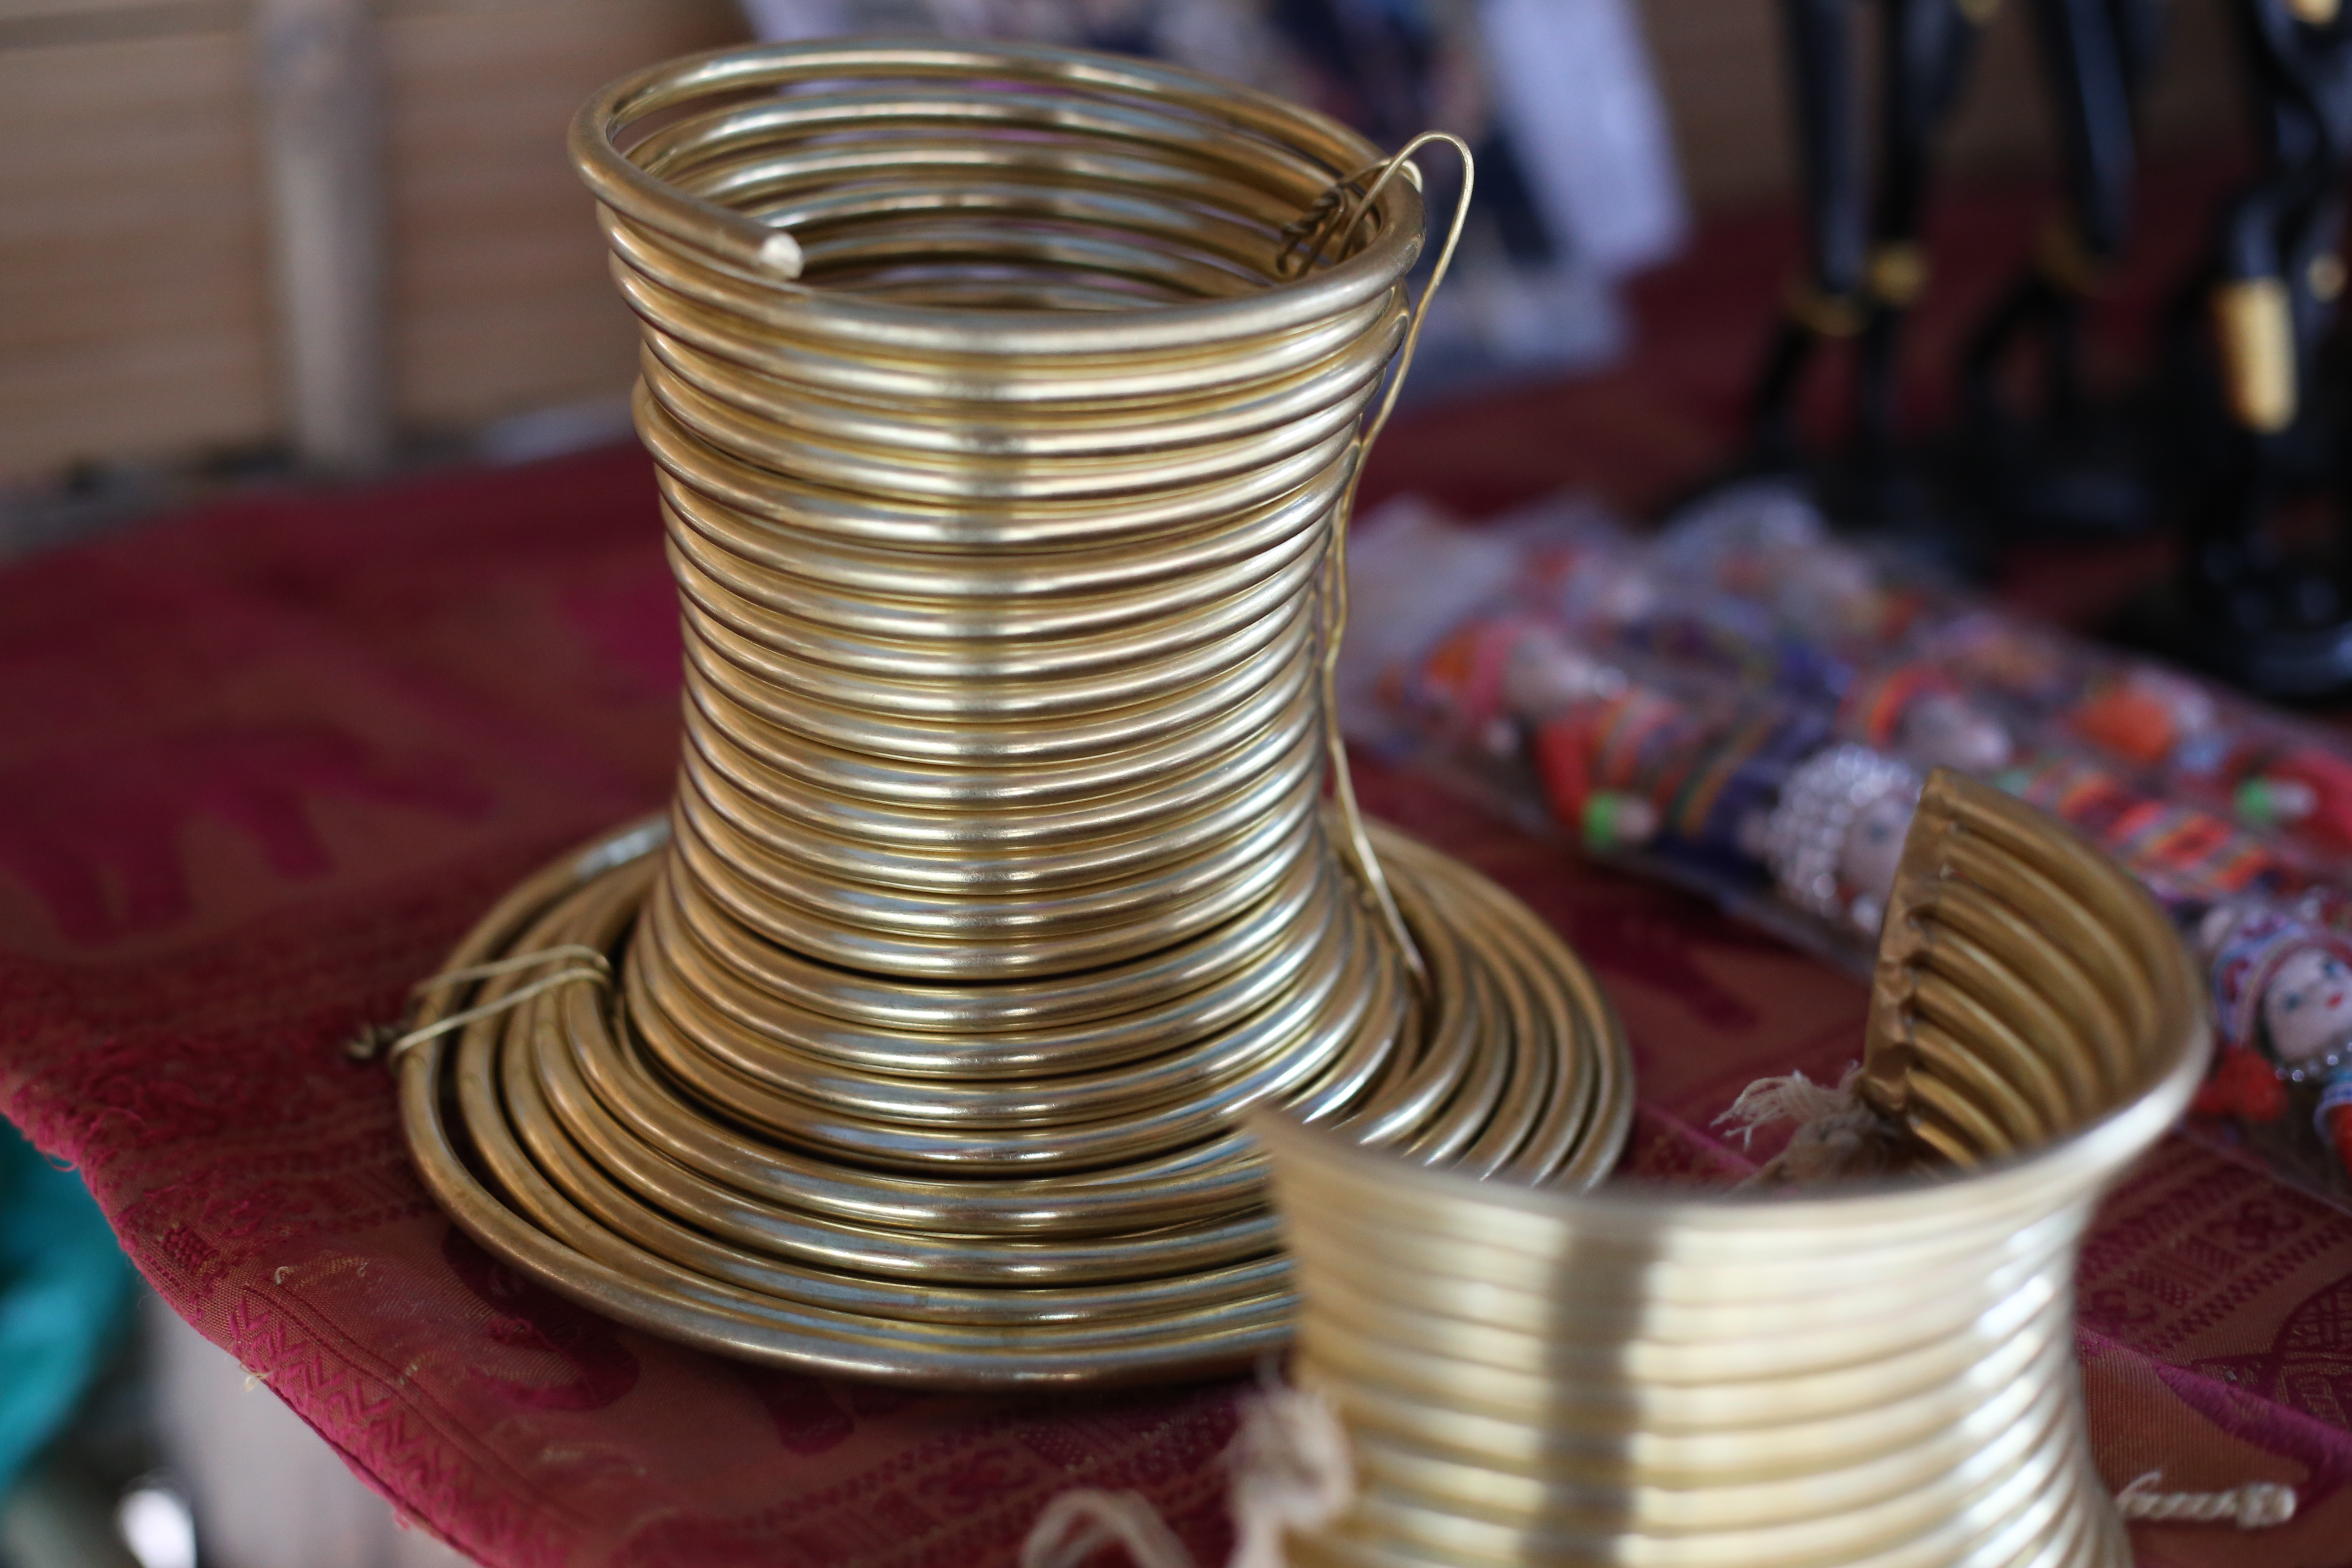 Anéis dourados e pesados usados pelas "mulheres-girafa". (Foto: Nathalia Tavolieri / Viagem em Detalhes)